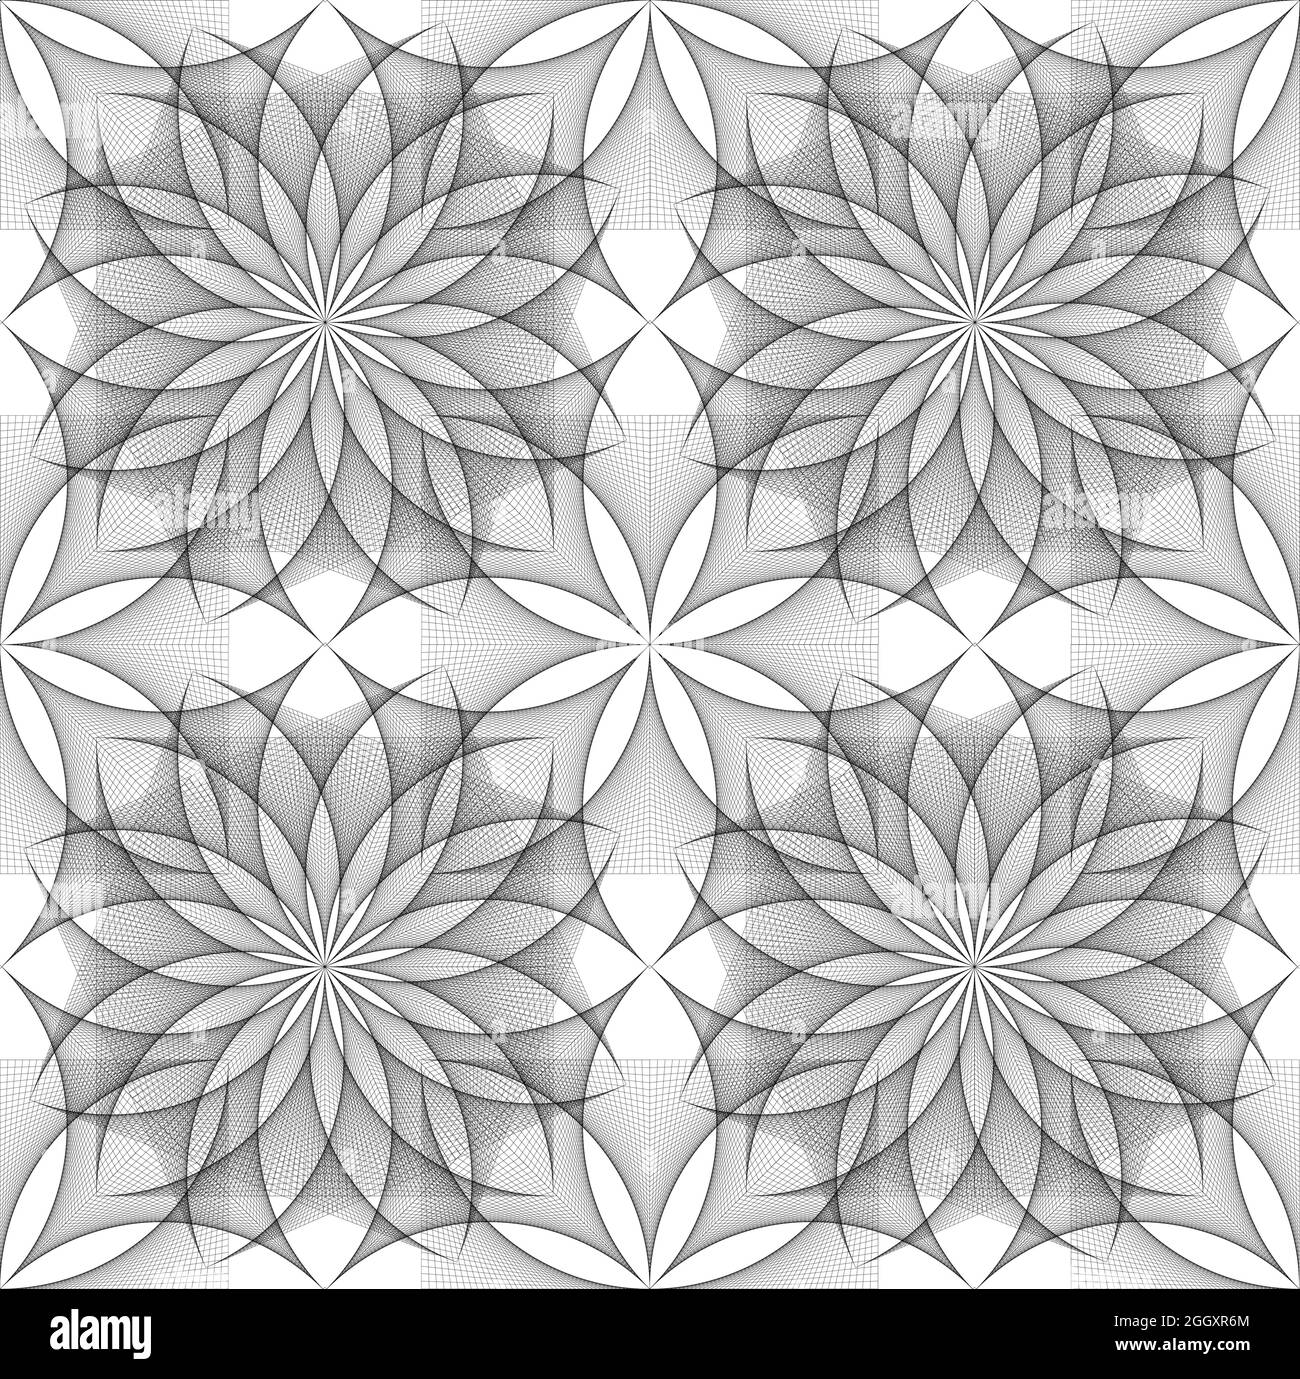 Nahtlose Blume des Lebens Symbol, quadratische Vorlage, geometrisches Drahtmodell Heilige Lotusblume, Fadenkunst, florale Heilige Geometrie in String schwarzen Linienraster Stock Vektor